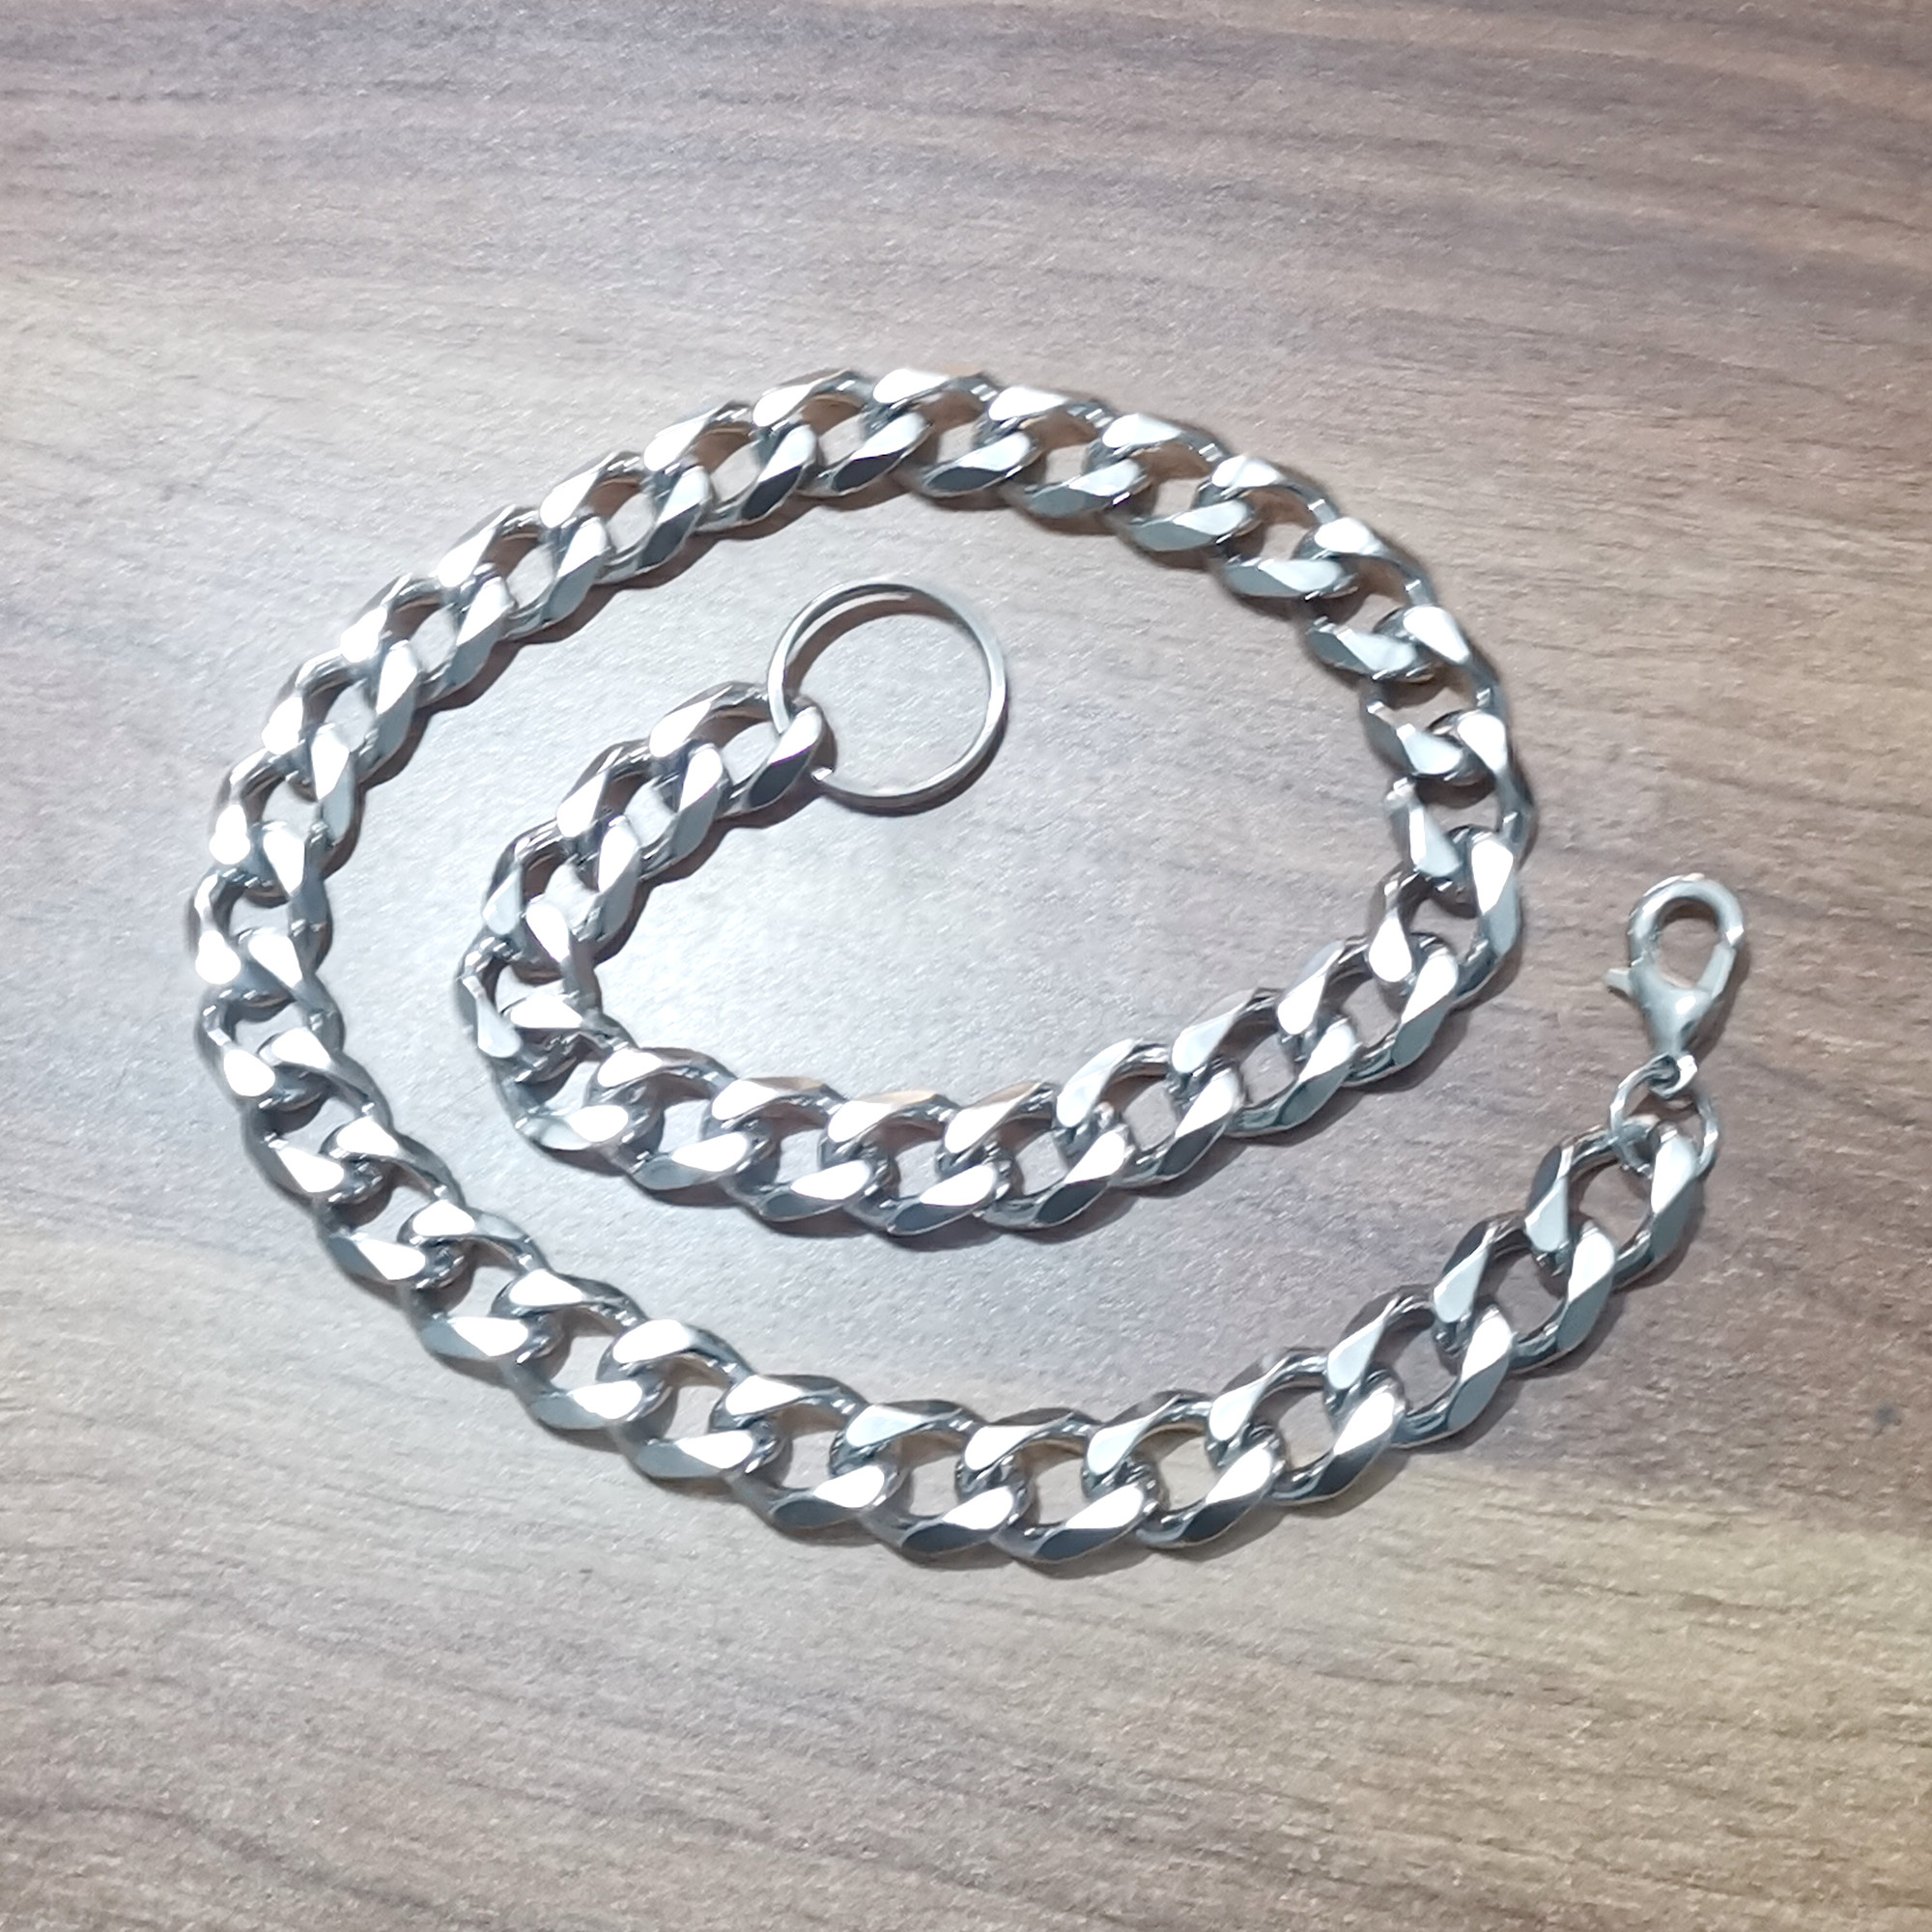 Nuevo diseño de collar de cadena cubana de Miami, joyería de cadenas pulidas grandes de acero inoxidable para hombres de 15mm, 18-36 pulgadas de longitud a elegir